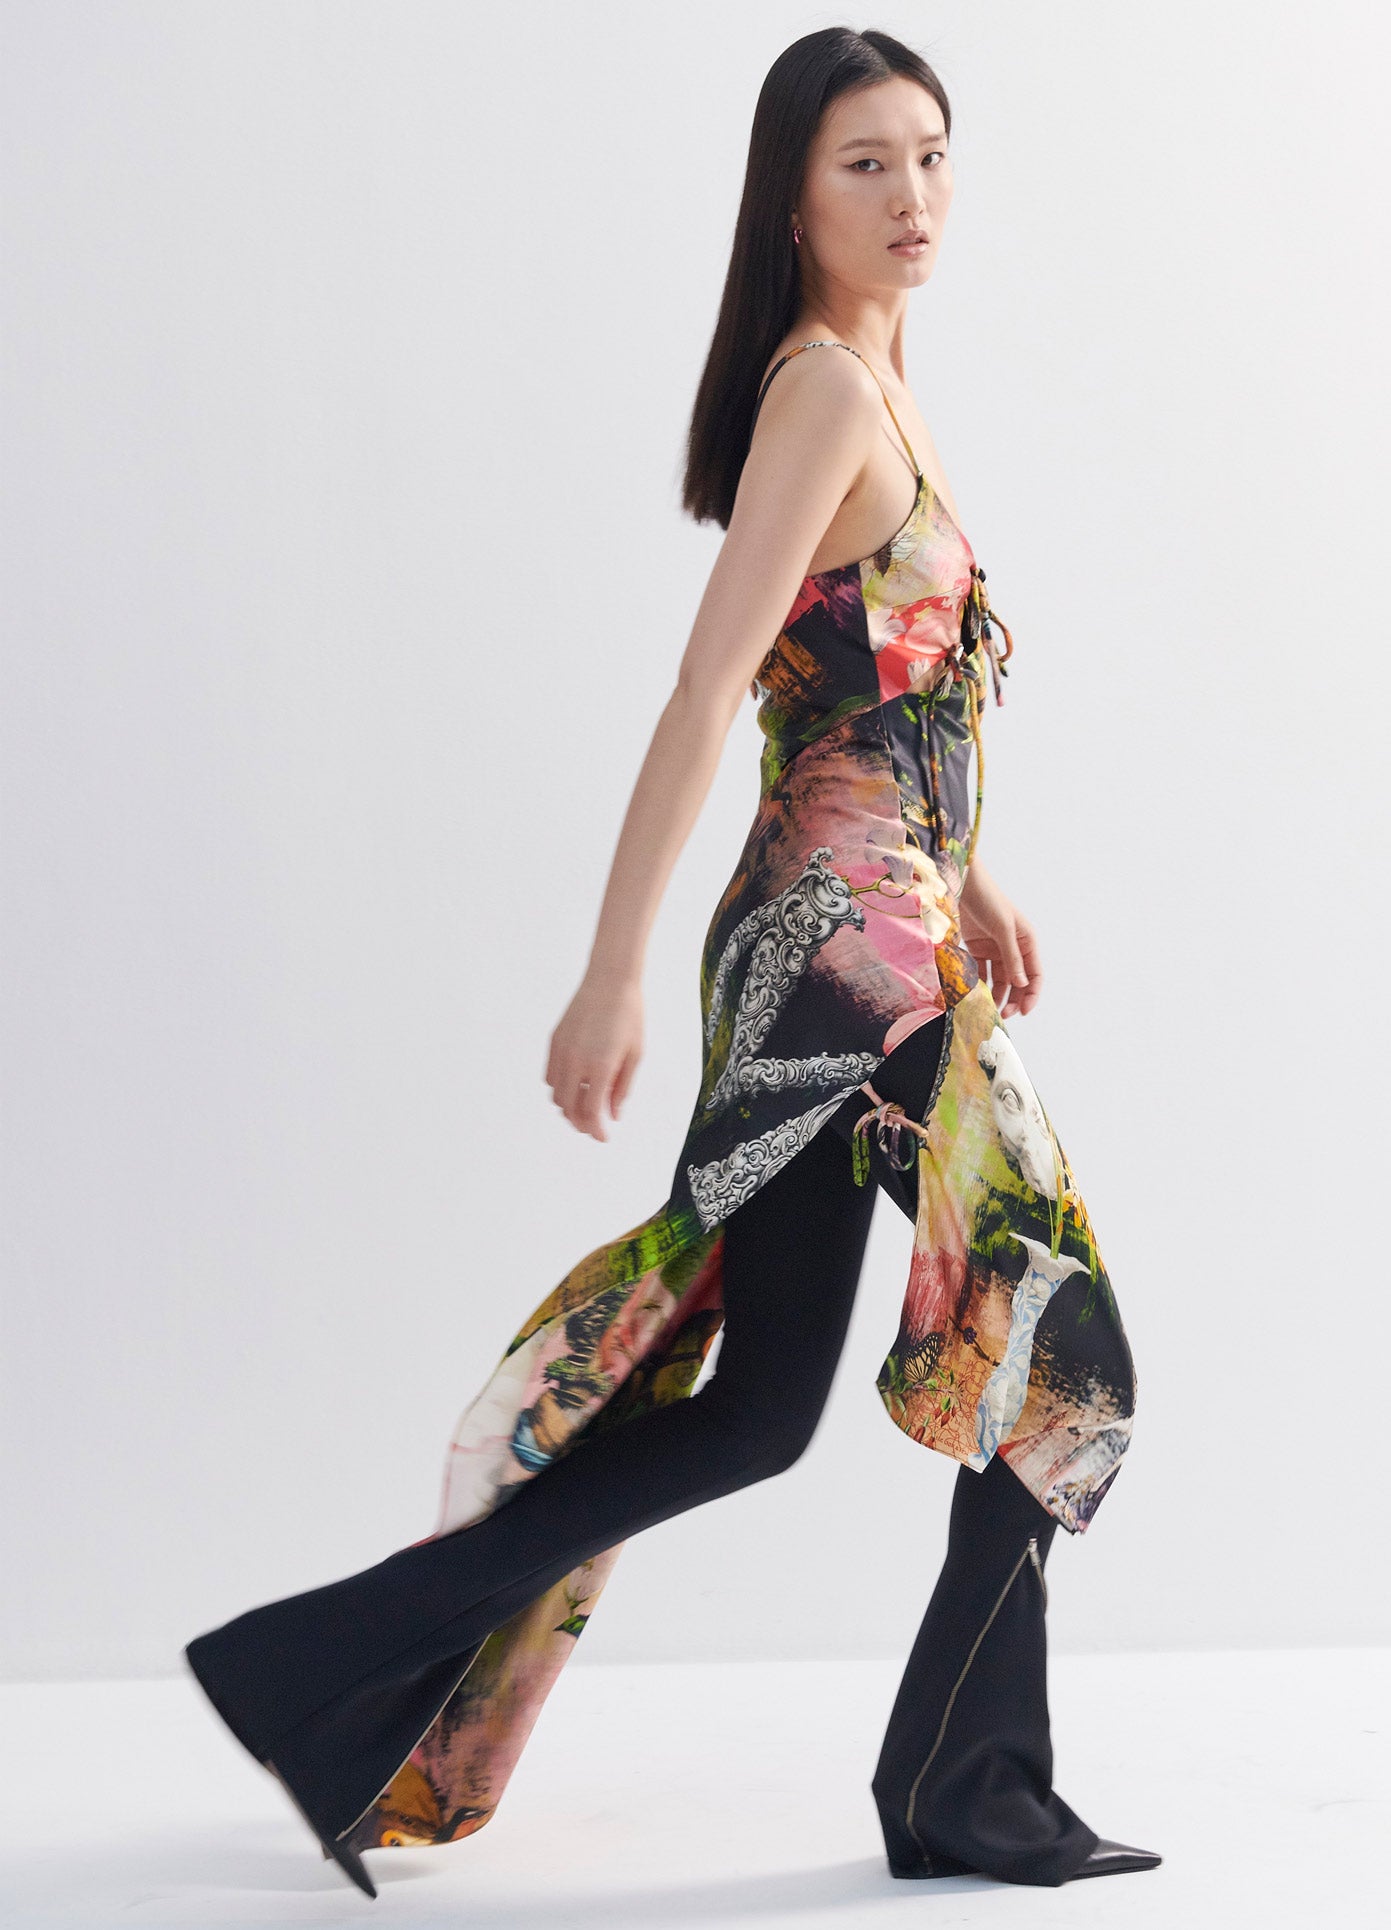 MONSE Print Slip Dress in Print Multi on Model Running Right Side View